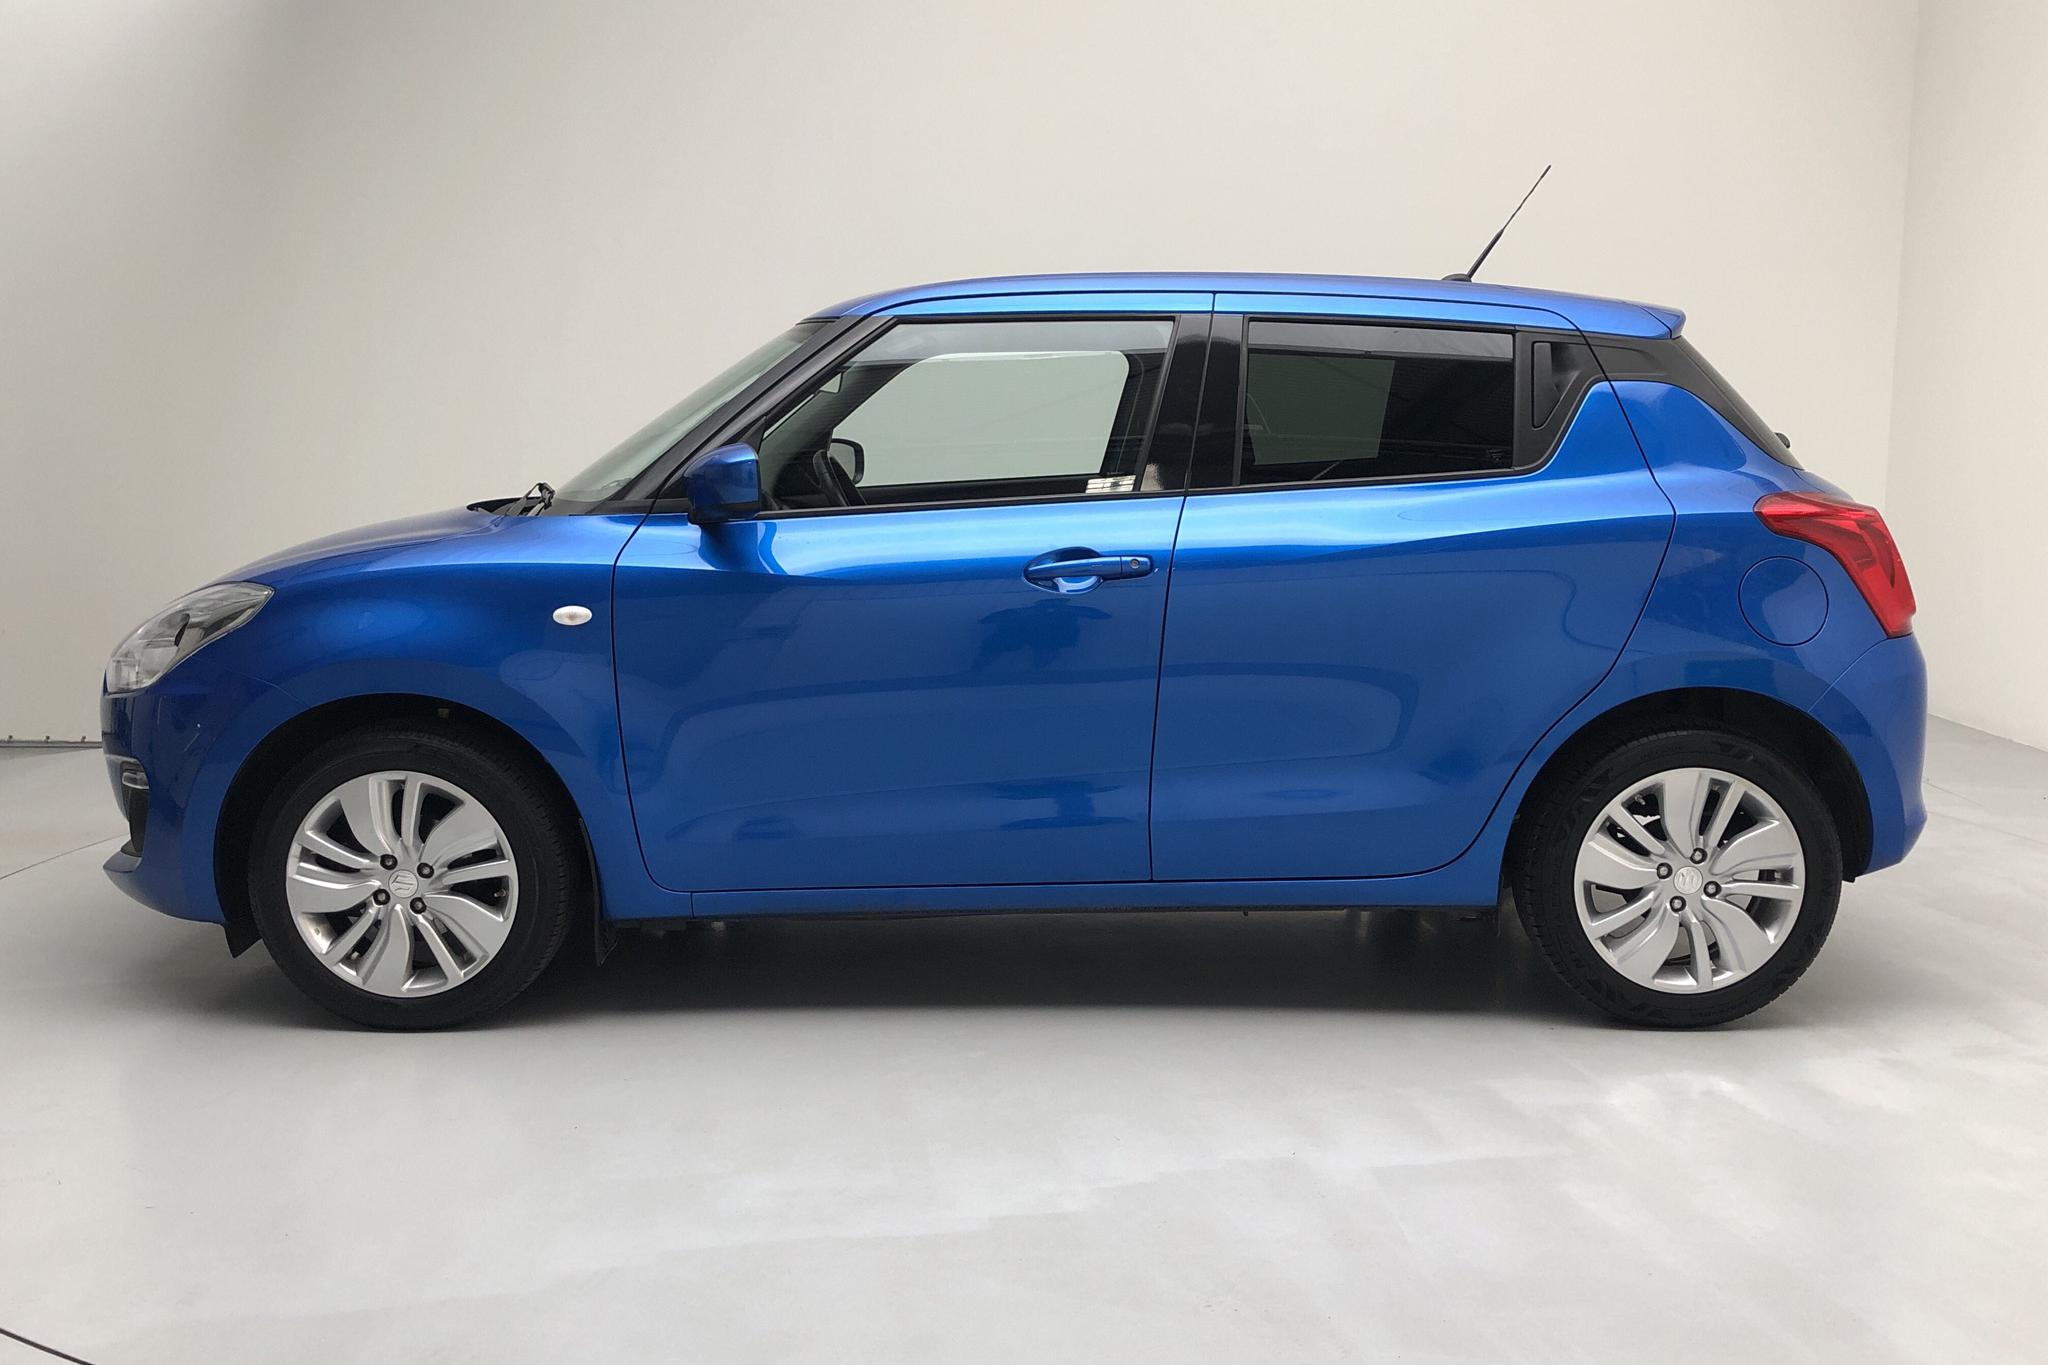 Suzuki Swift 1.2 5dr (90hk) - 62 520 km - Manual - blue - 2018